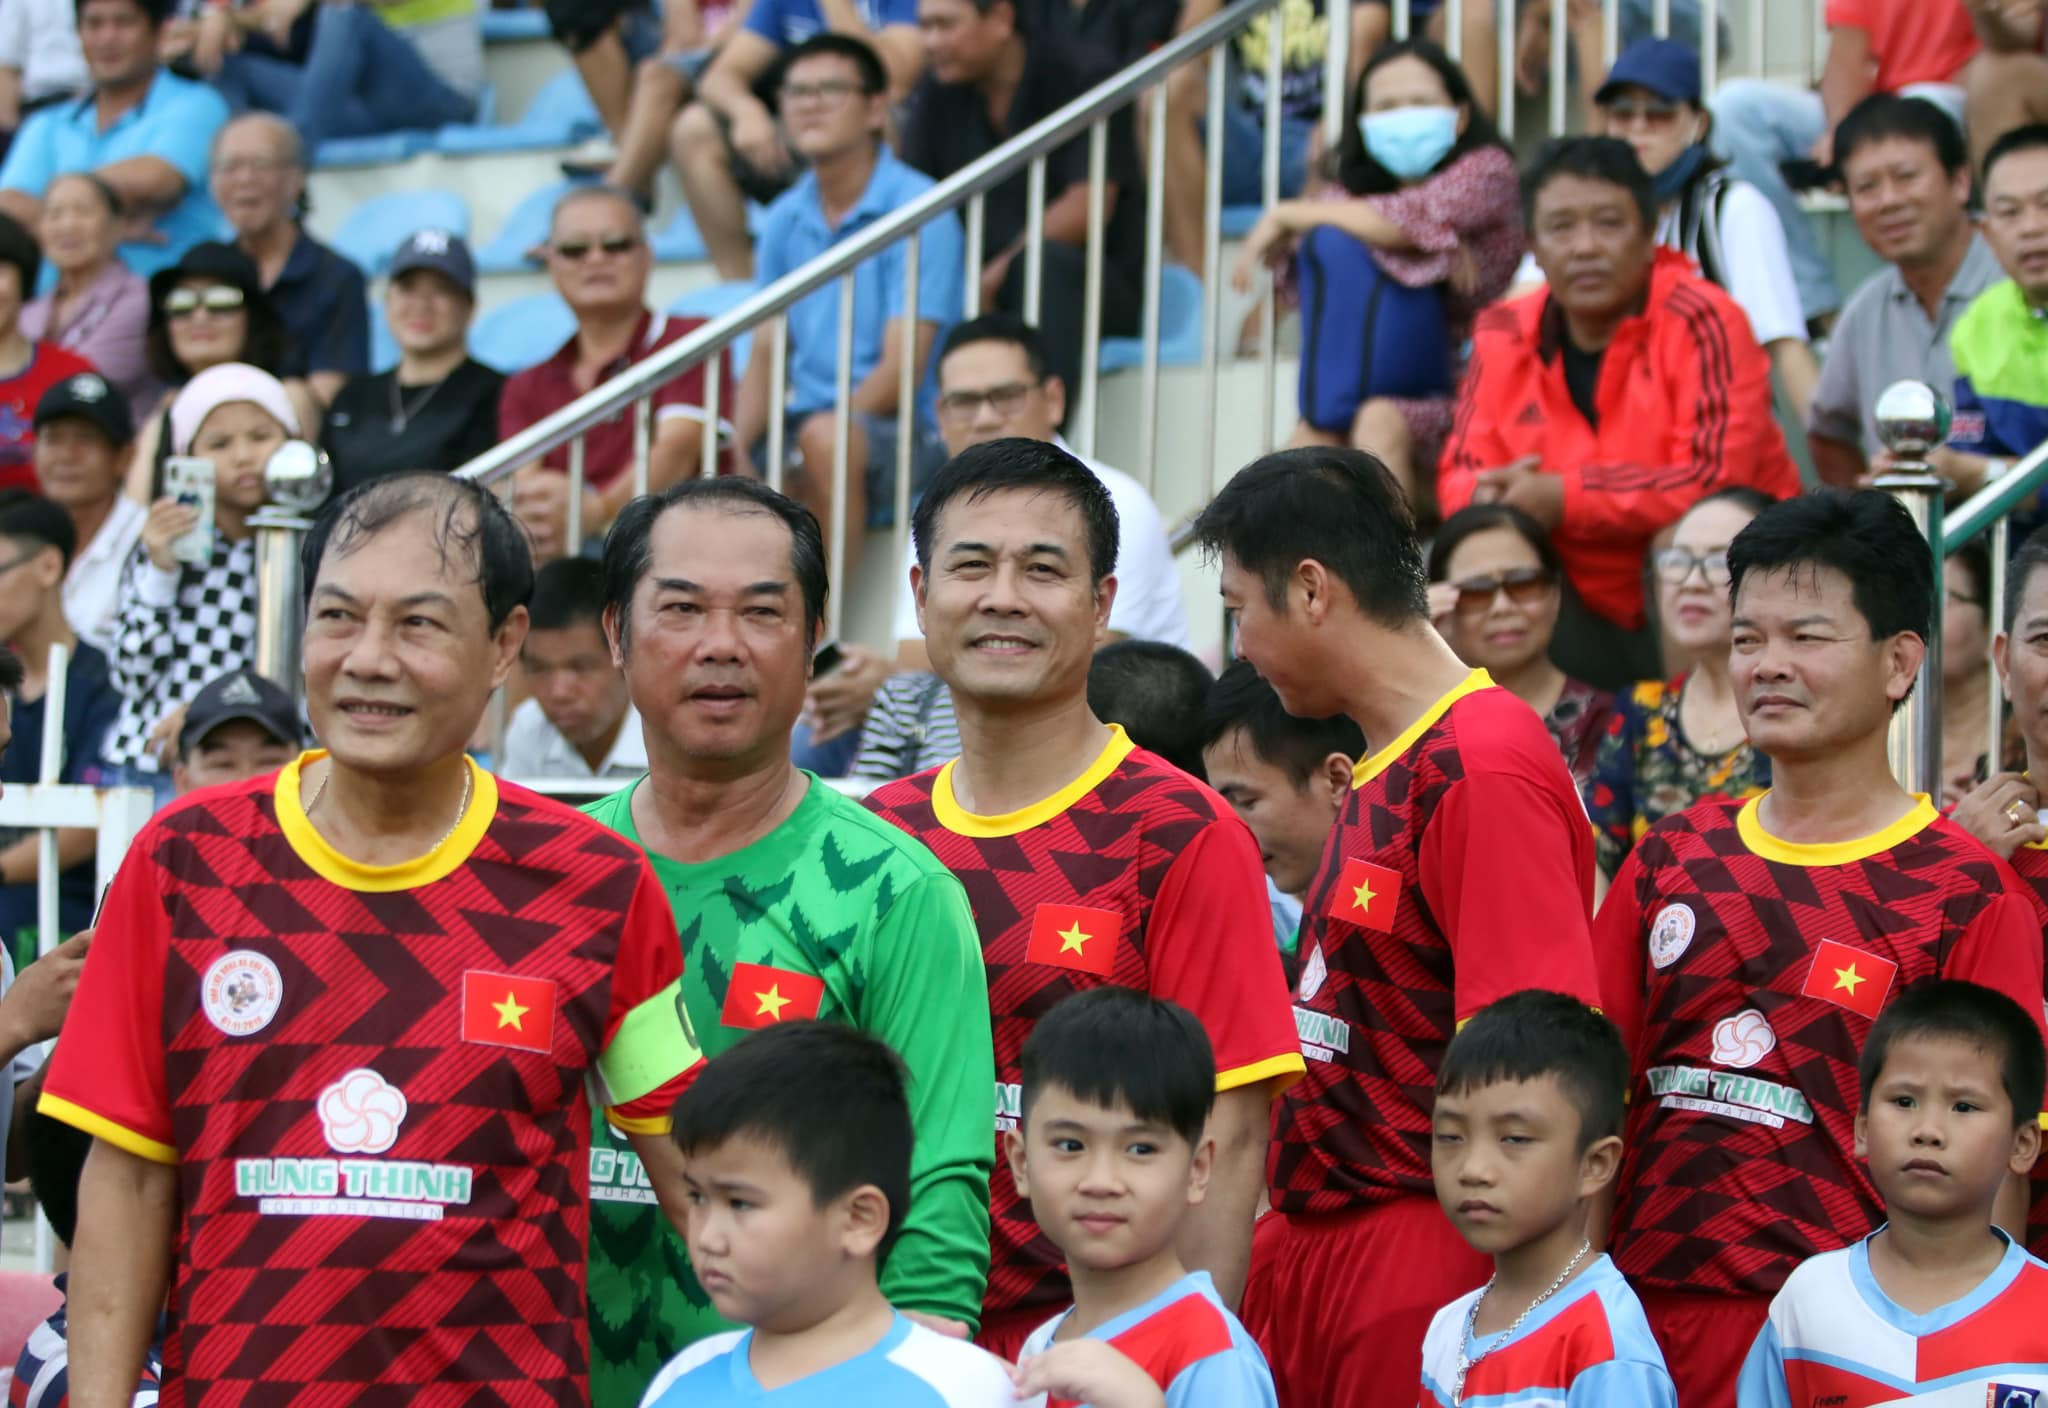 Buổi giao lưu và trận bóng đá này được tổ chức với mục đích quyên góp, hỗ trợ đồng bào Bình Định vừa hứng chịu cơn bão số 5. Ảnh: Tuấn Hữu